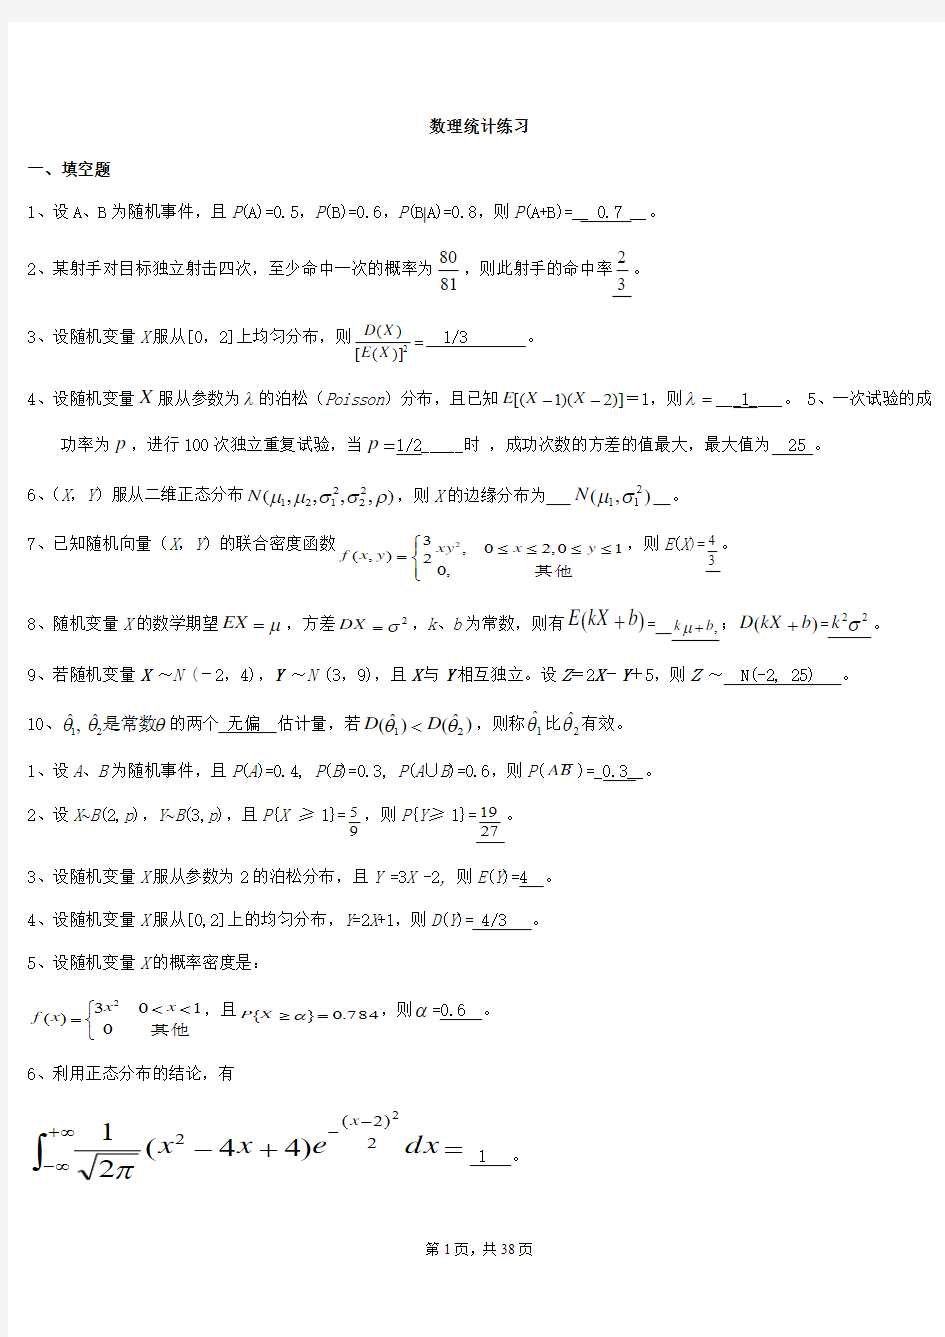 中国海洋大学概率论和数理统计期末考试题库